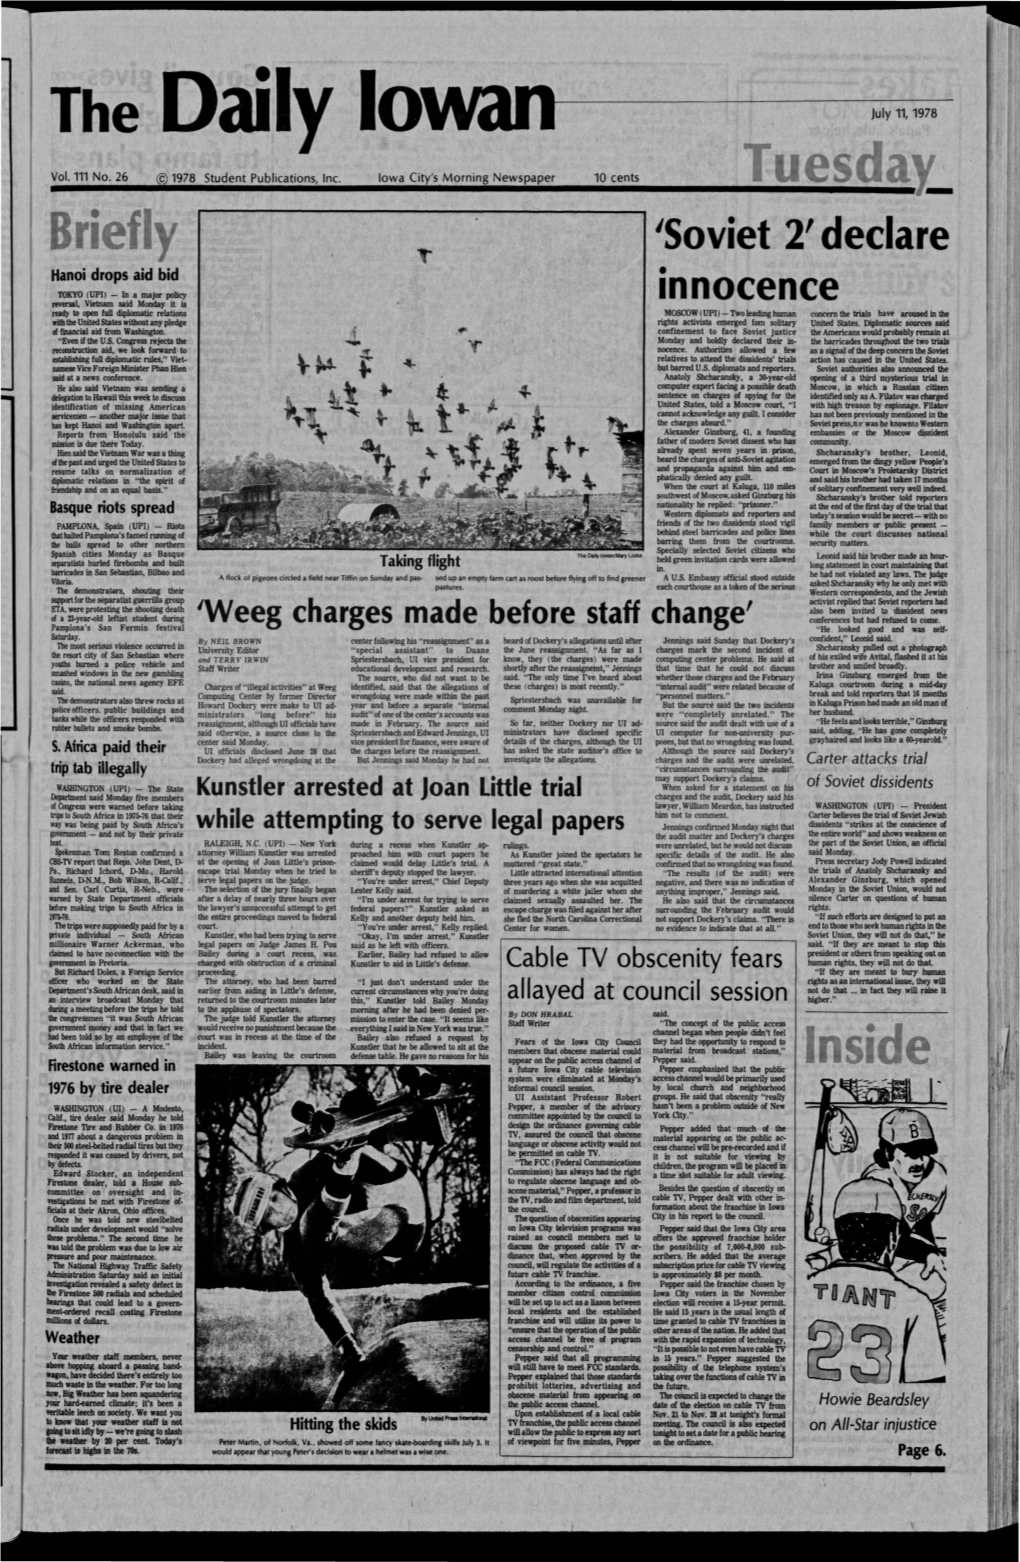 Daily Iowan (Iowa City, Iowa), 1978-07-11